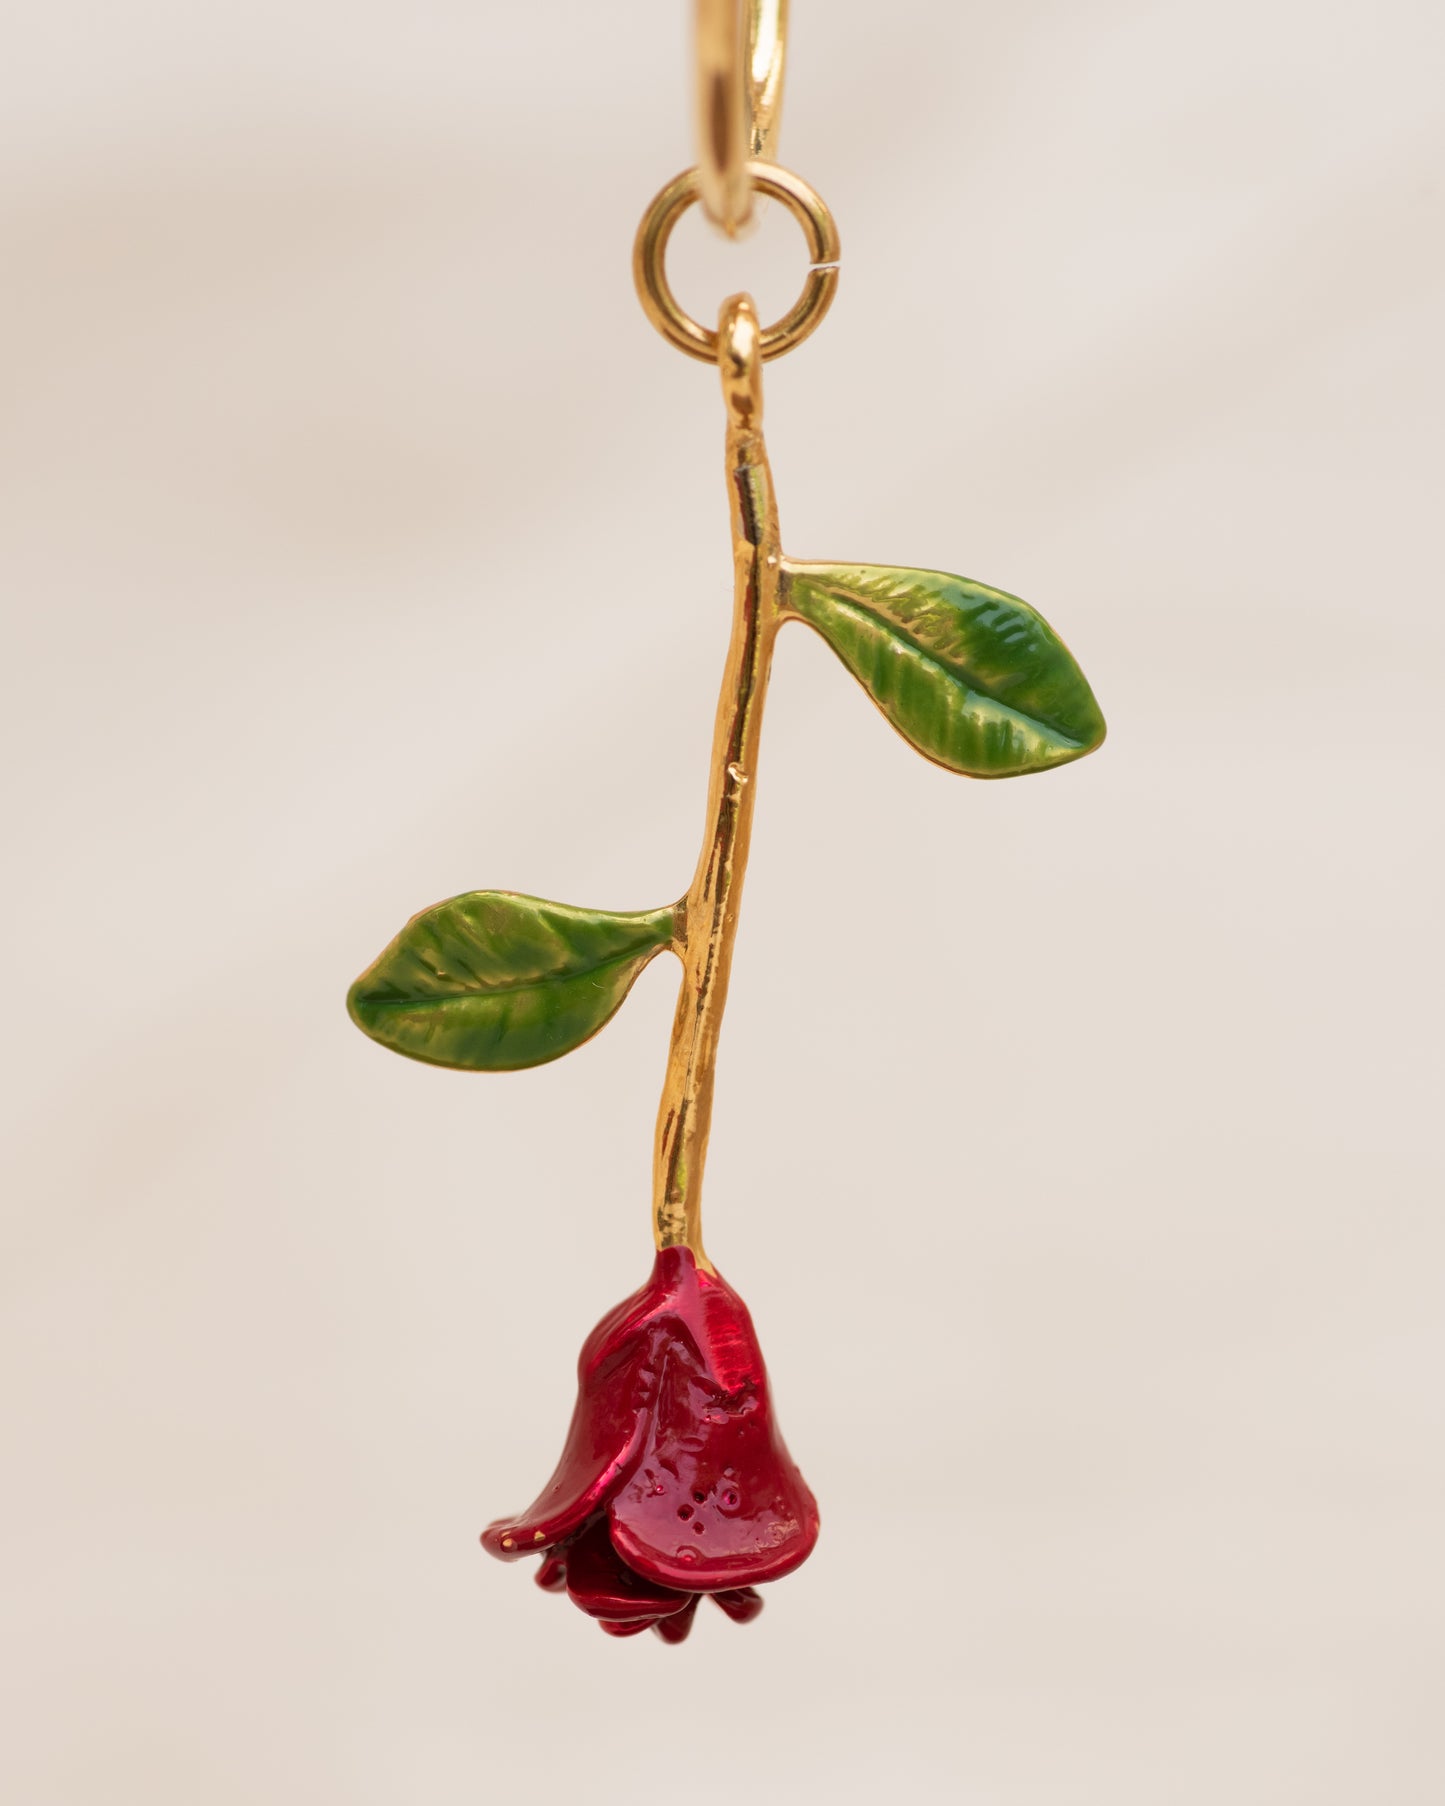 Single Charm Hoop Earring (Red Rose)